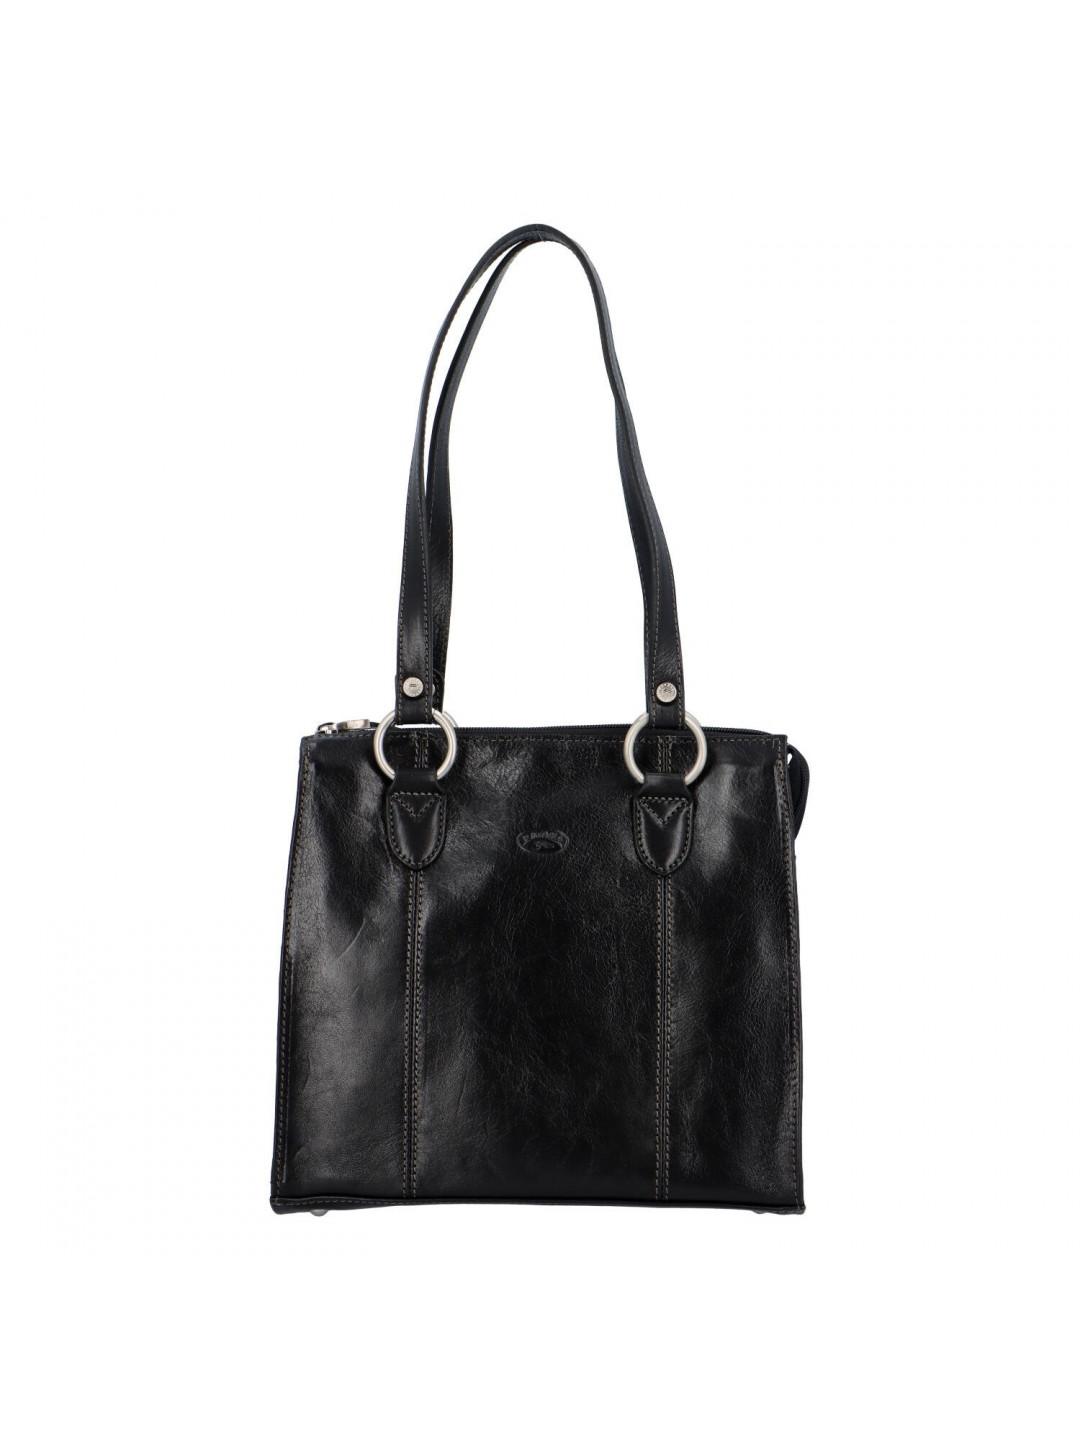 Luxusní dámská kožená kabelka Katana Lana černá